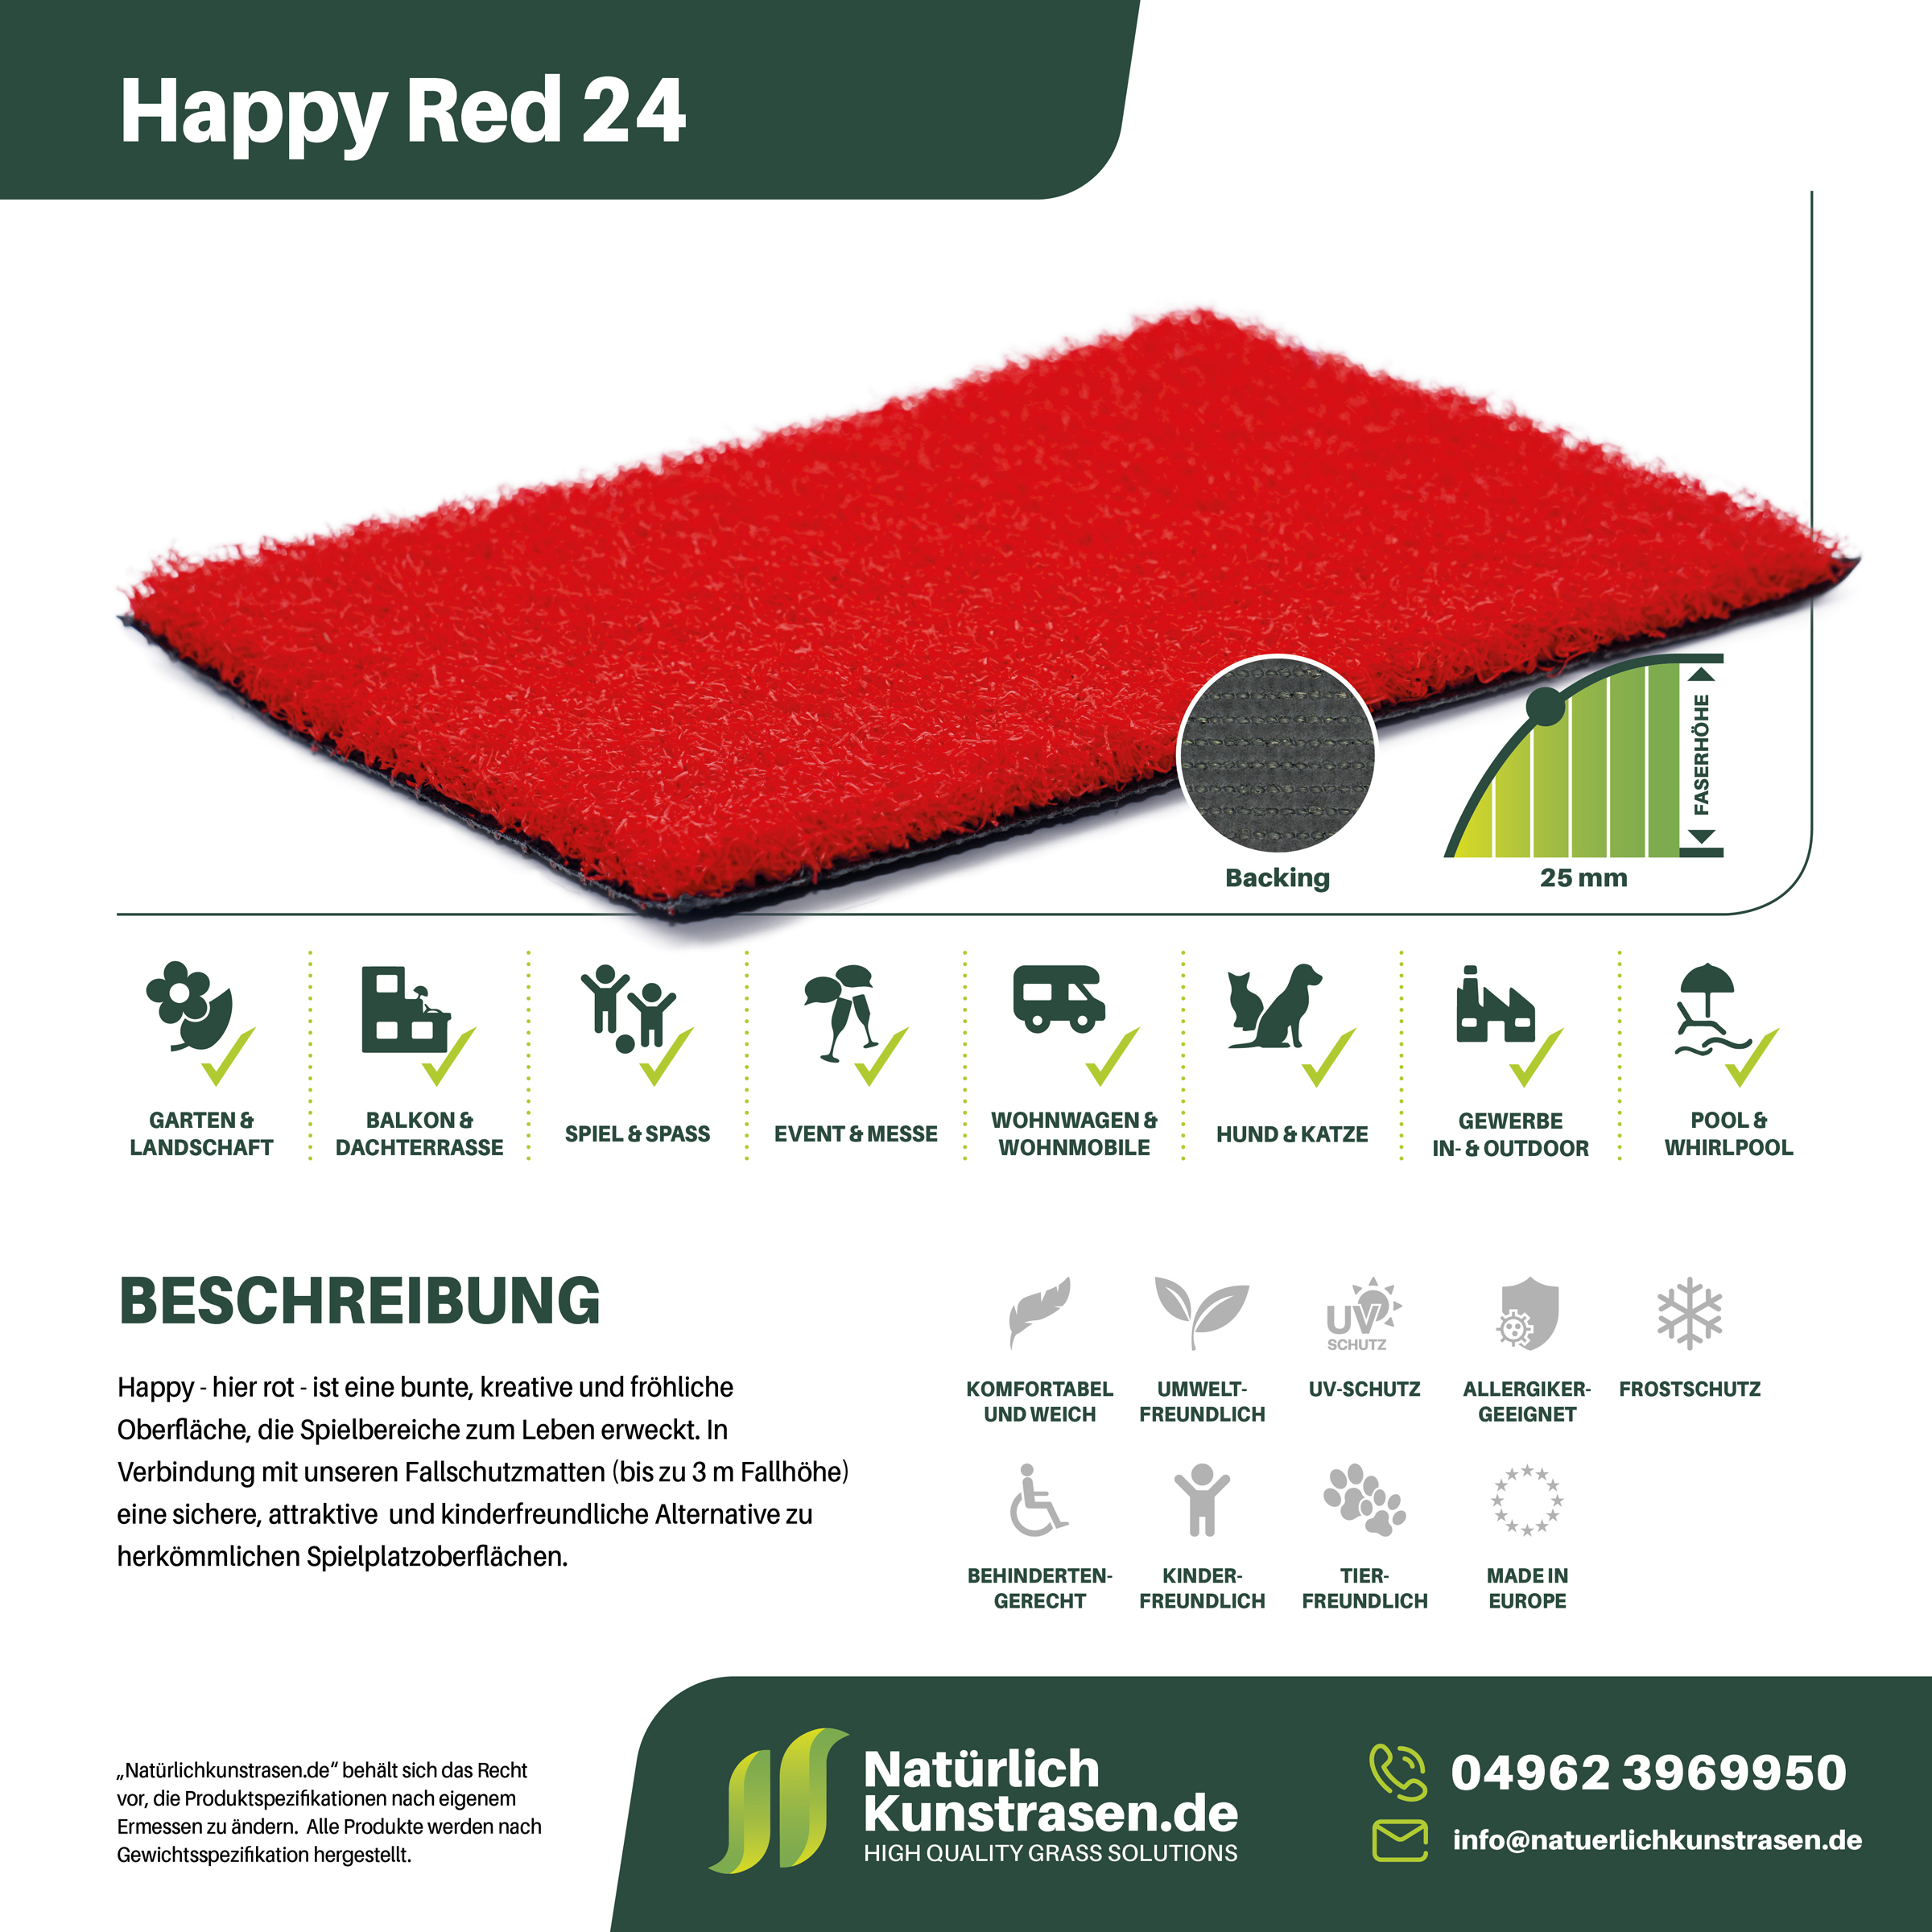 Kunstrasen-Produkte+Anwendungsgebiete+Name-Happy-Red-24.jpg